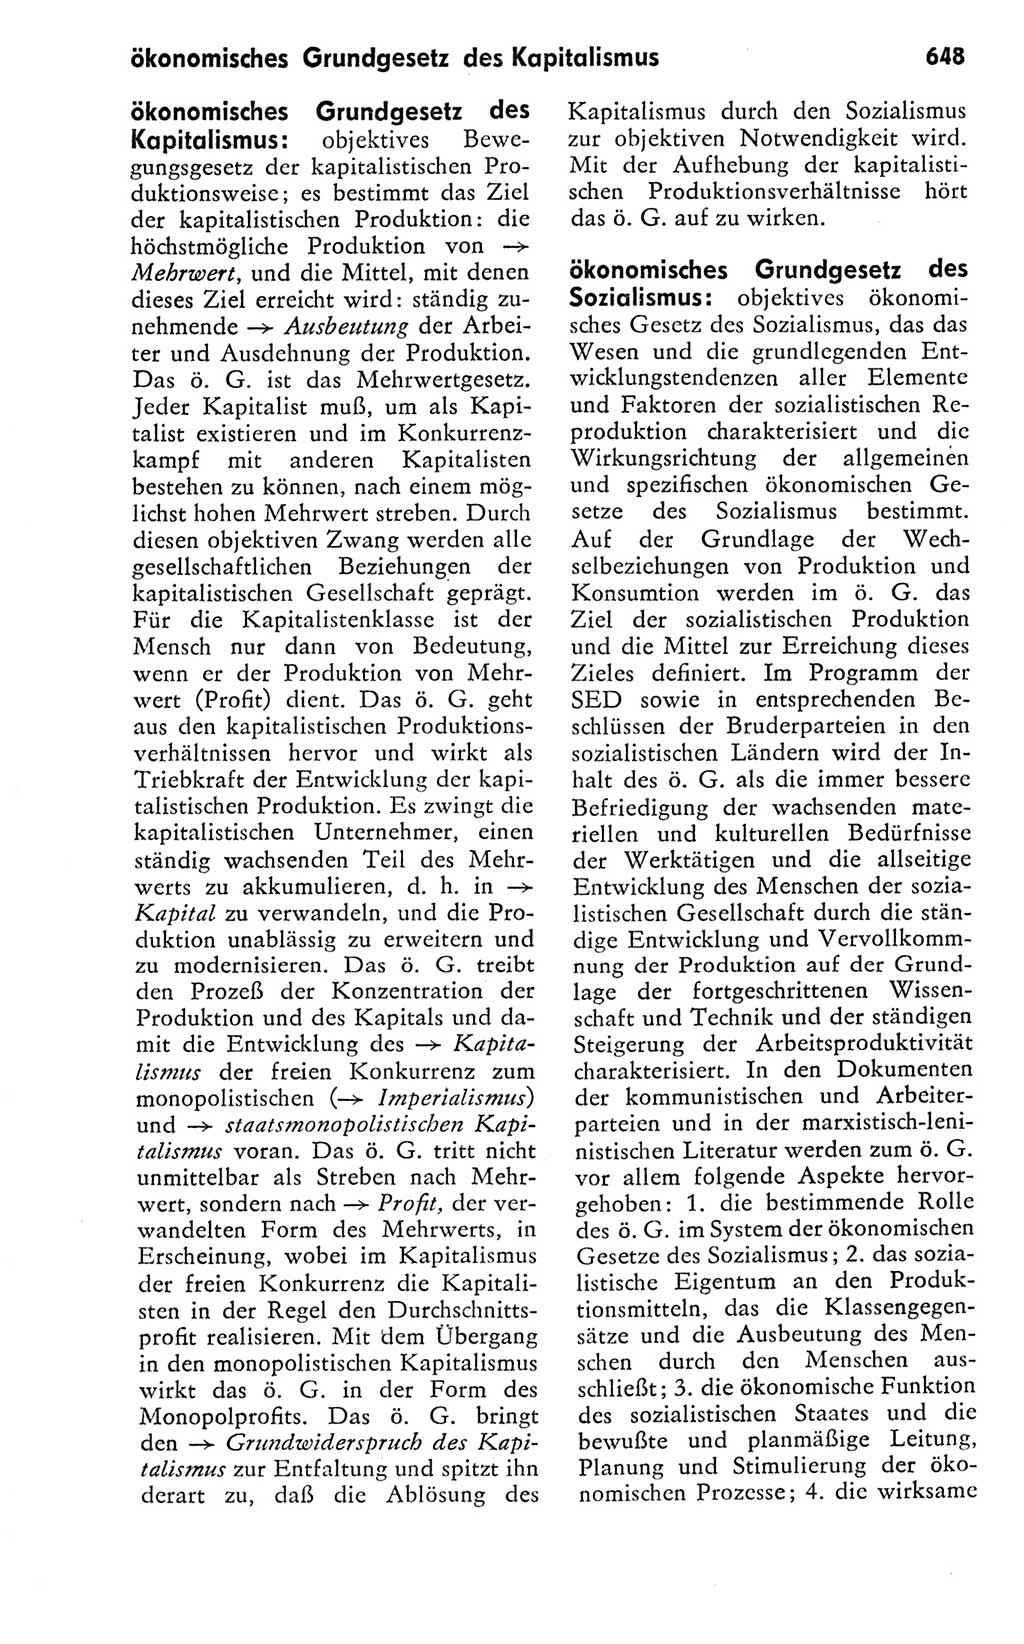 Kleines politisches Wörterbuch [Deutsche Demokratische Republik (DDR)] 1978, Seite 648 (Kl. pol. Wb. DDR 1978, S. 648)